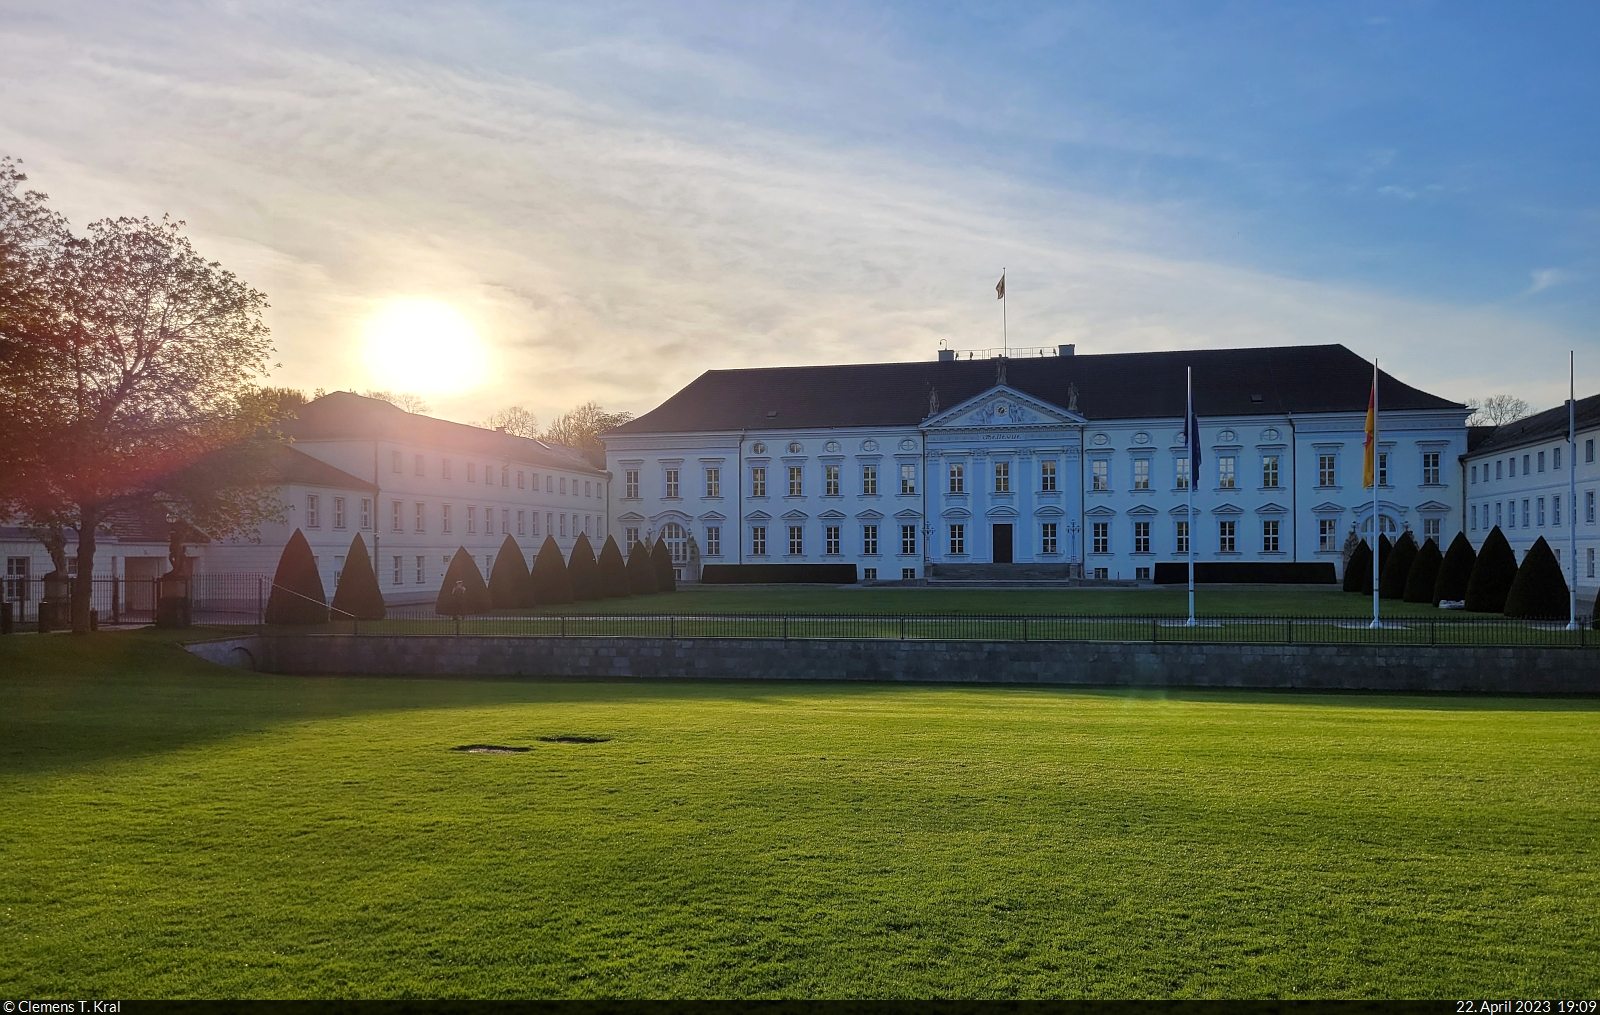 Das Schloss Bellevue in Berlin am Abend. Hier residiert bekanntlich der Bundesprsident.

🕓 22.4.2023 | 19:09 Uhr